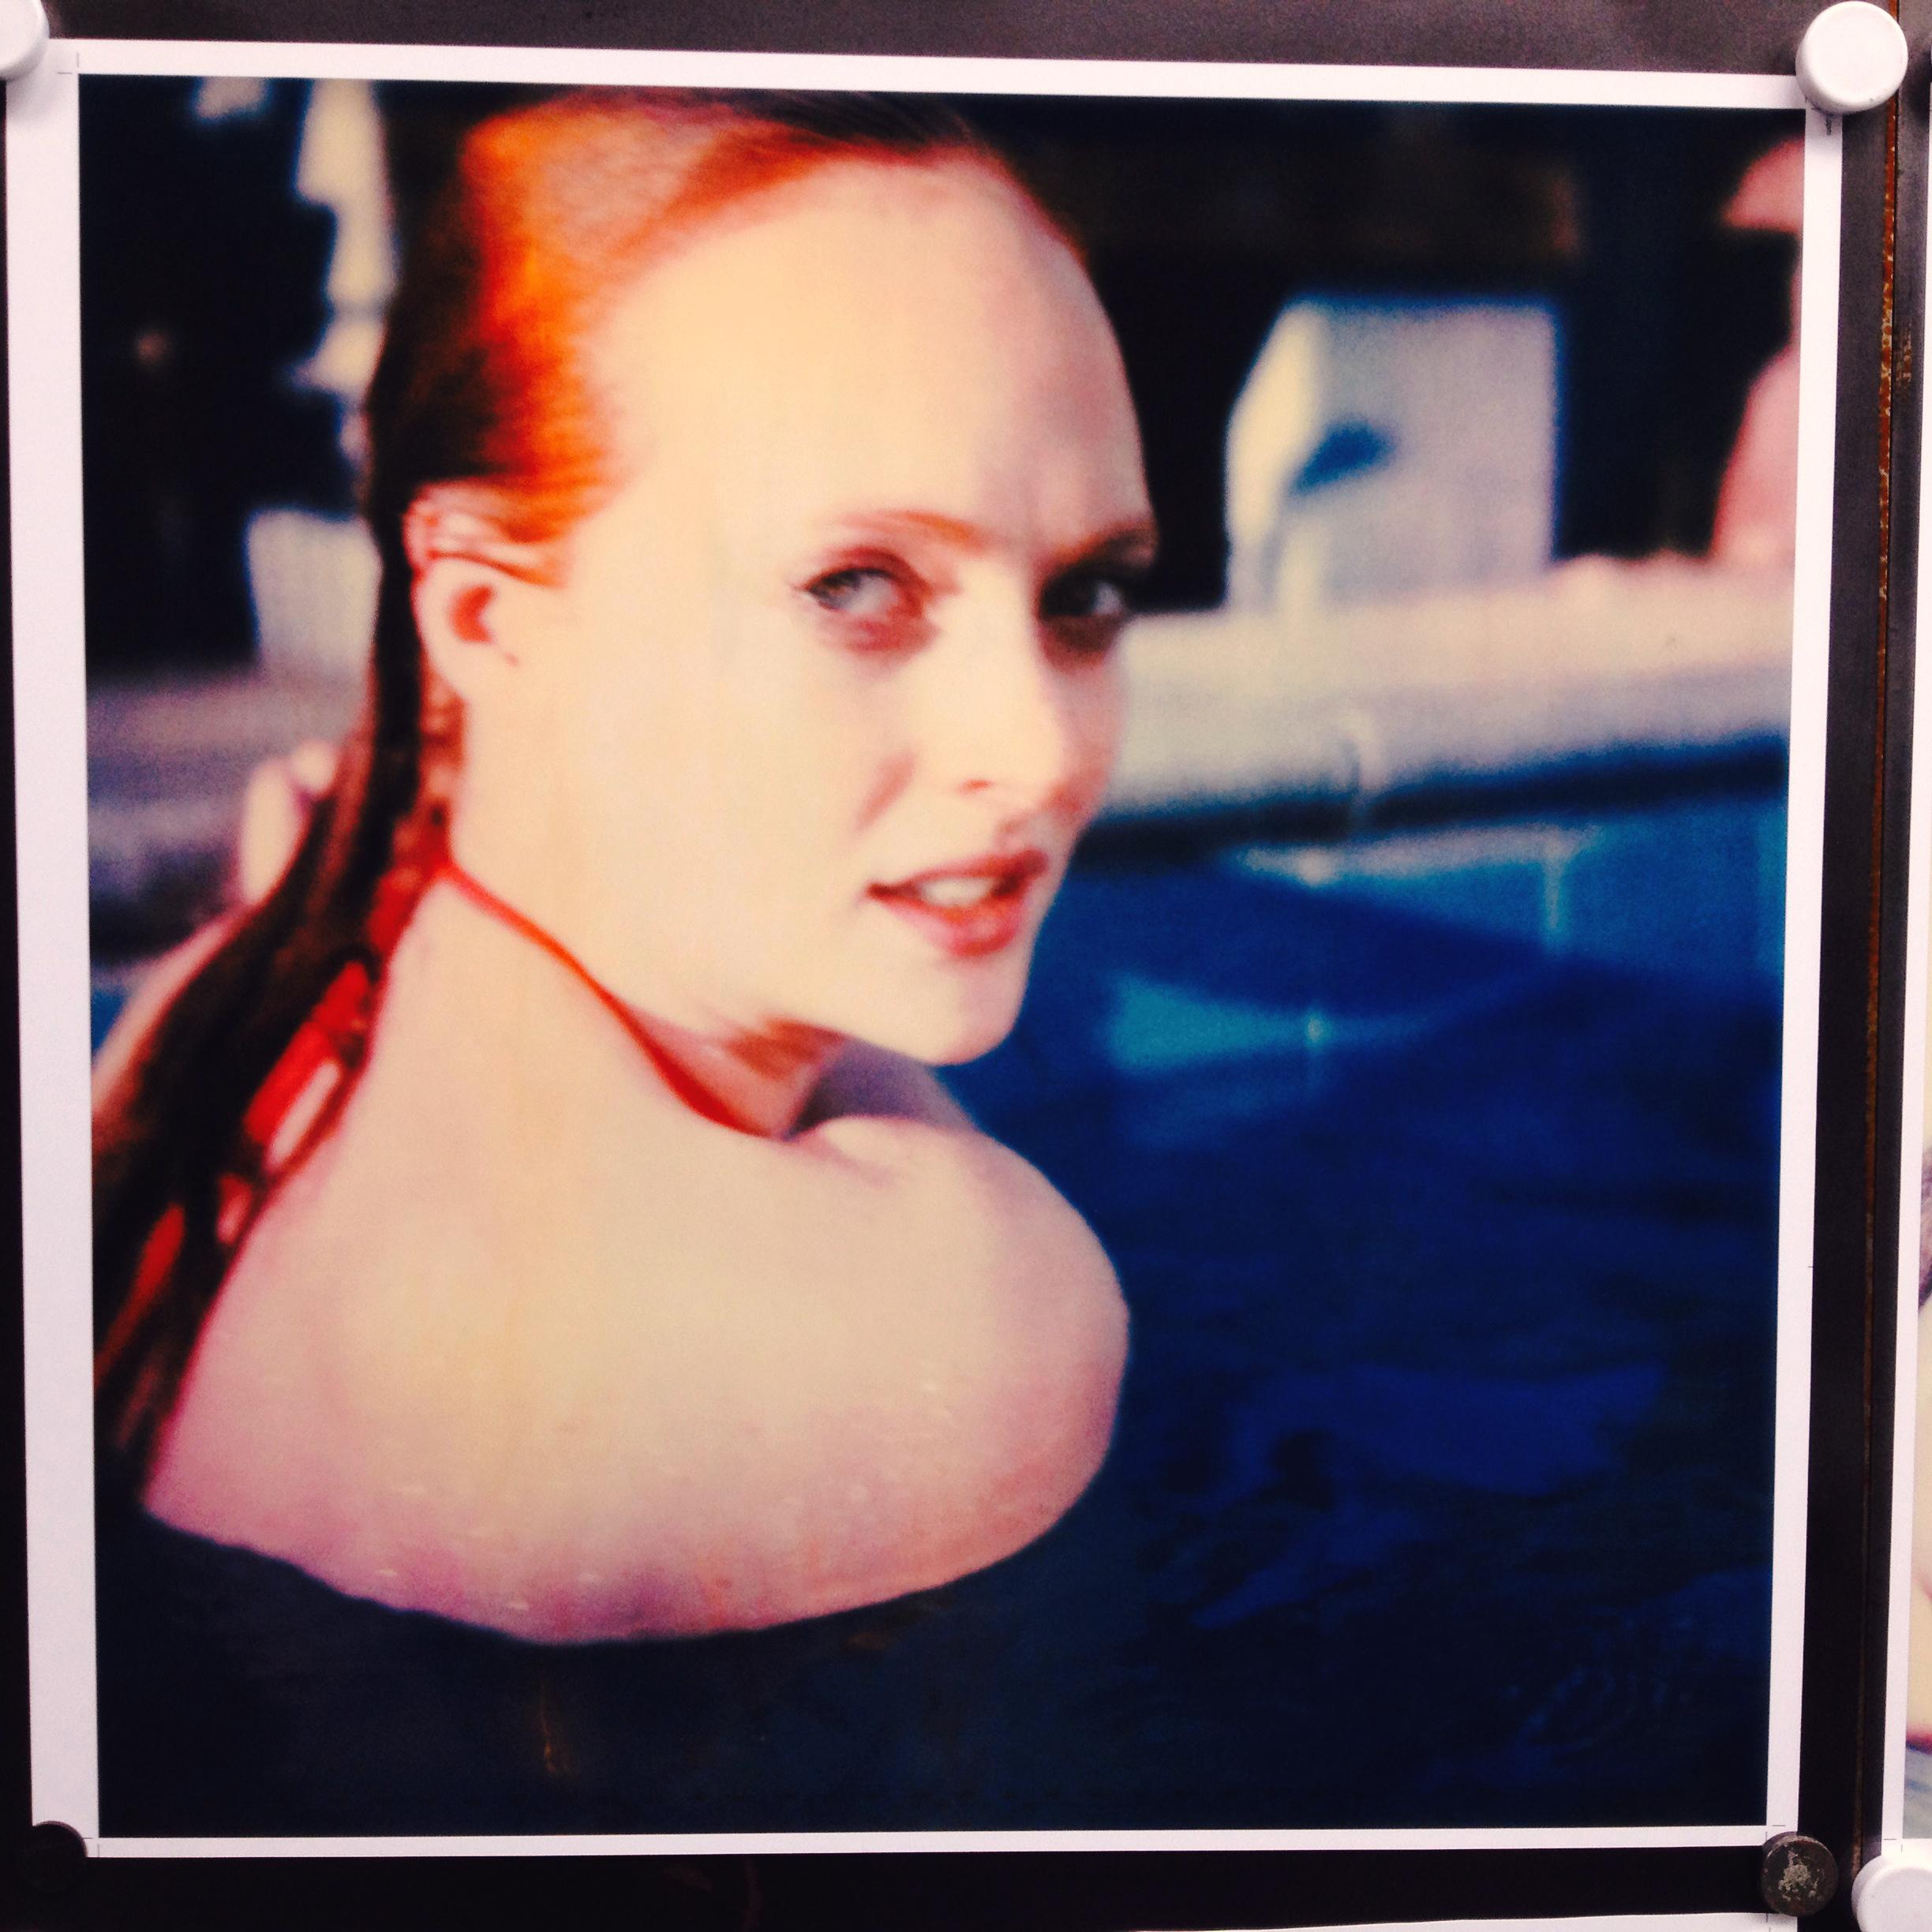 Stefanie Schneider Portrait Photograph - Your Eyes on Me (Till Death do us Part) with Daisy McCrackin based on a Polaroid